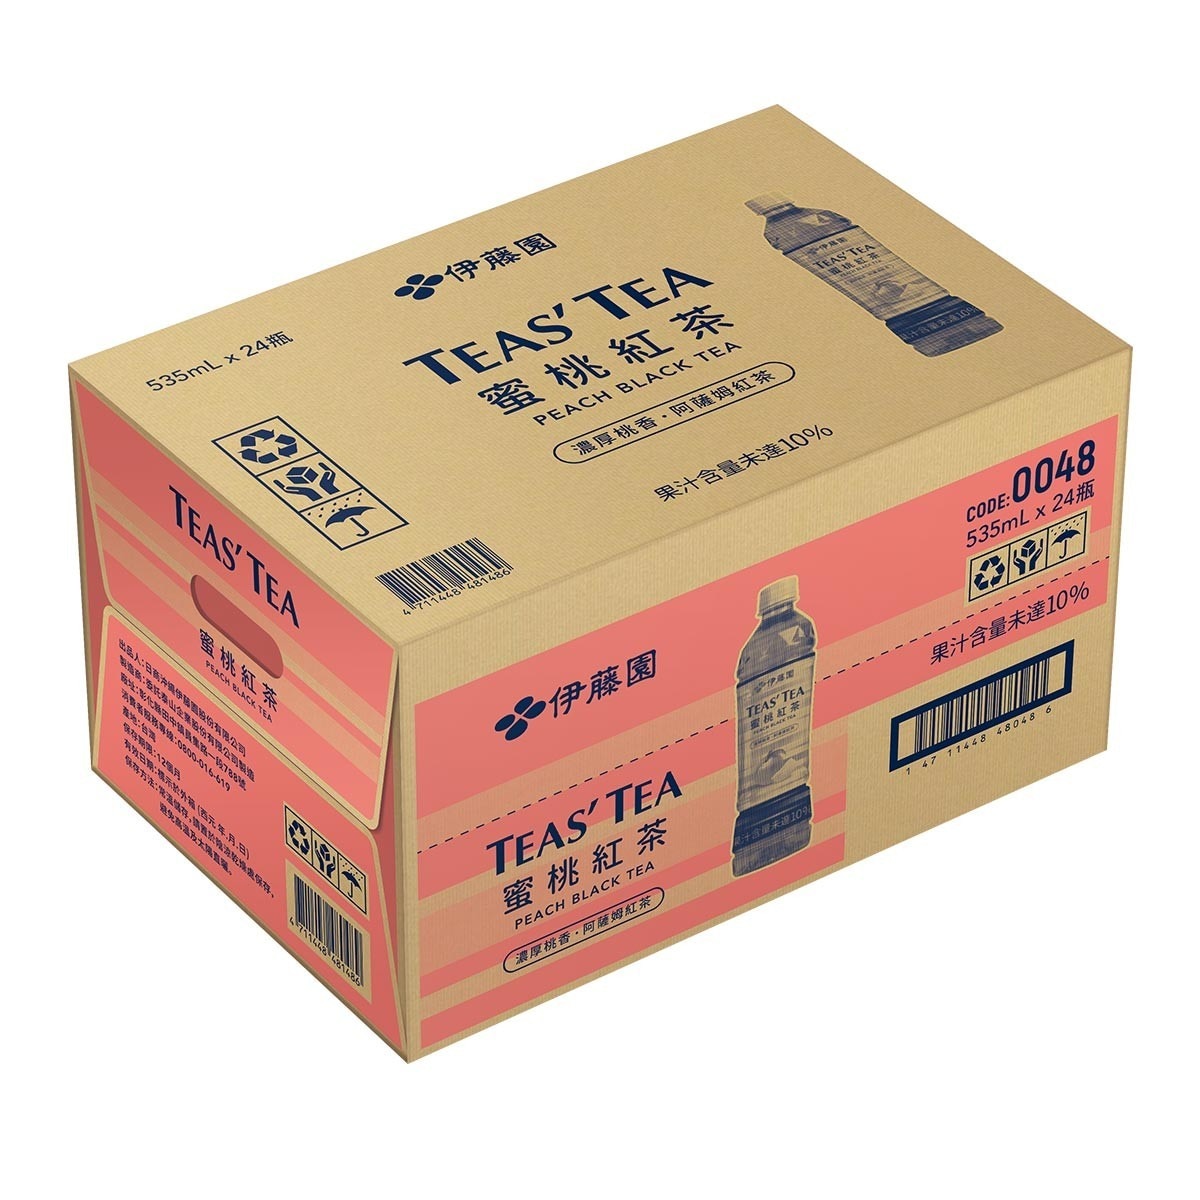 Ito-En 伊藤園 Teas' Tea 蜜桃紅茶 535毫升 X 24瓶